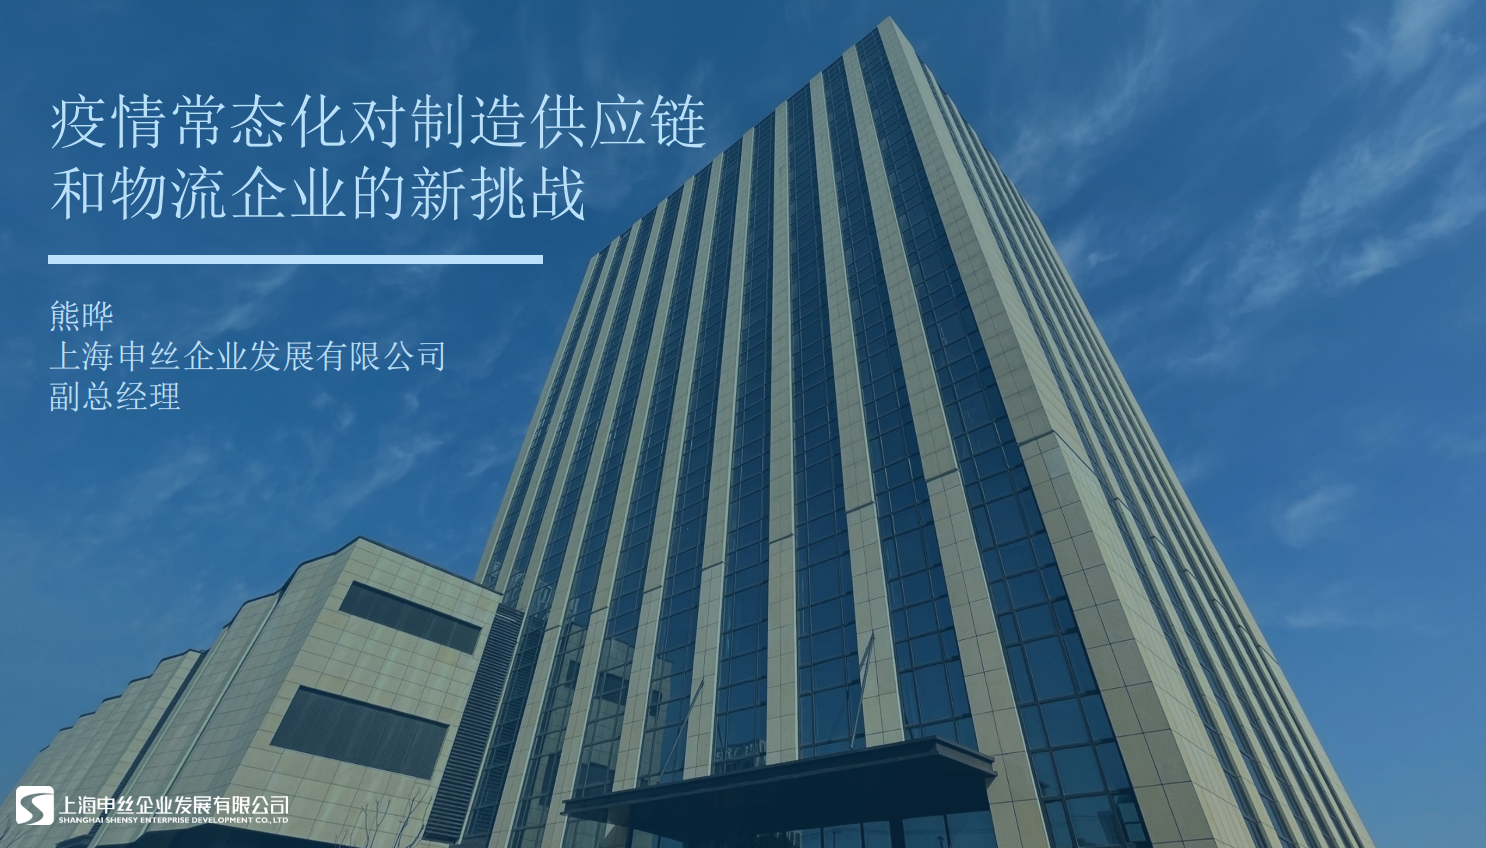 【4.16直播】上海申丝-疫情常态化对制造供应链和物流企业的新挑战